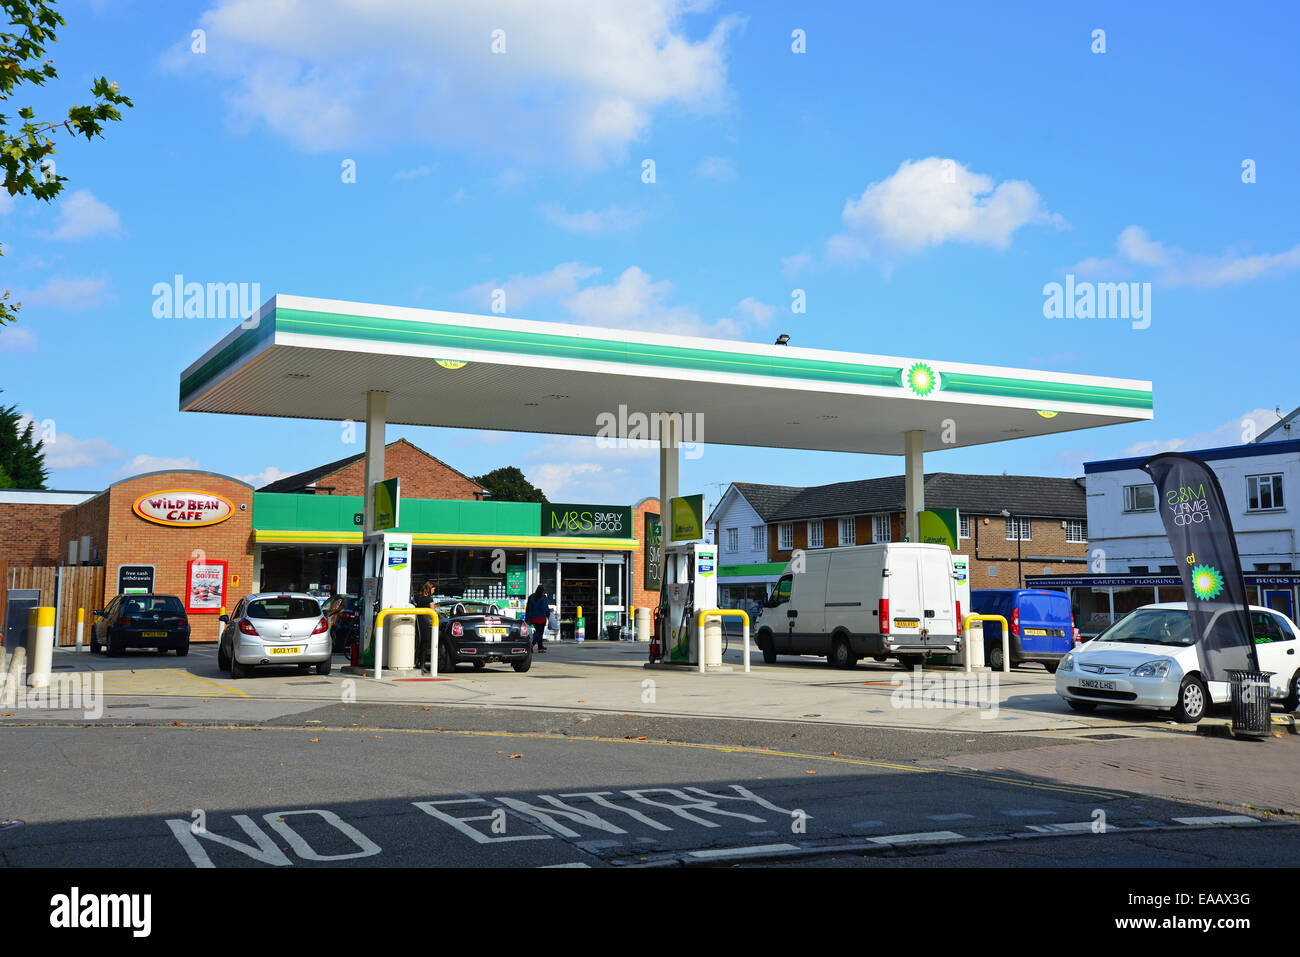 Garage BP avec M&S, le magasin Eaton, Bourne End, Buckinghamshire, Angleterre, Royaume-Uni Banque D'Images